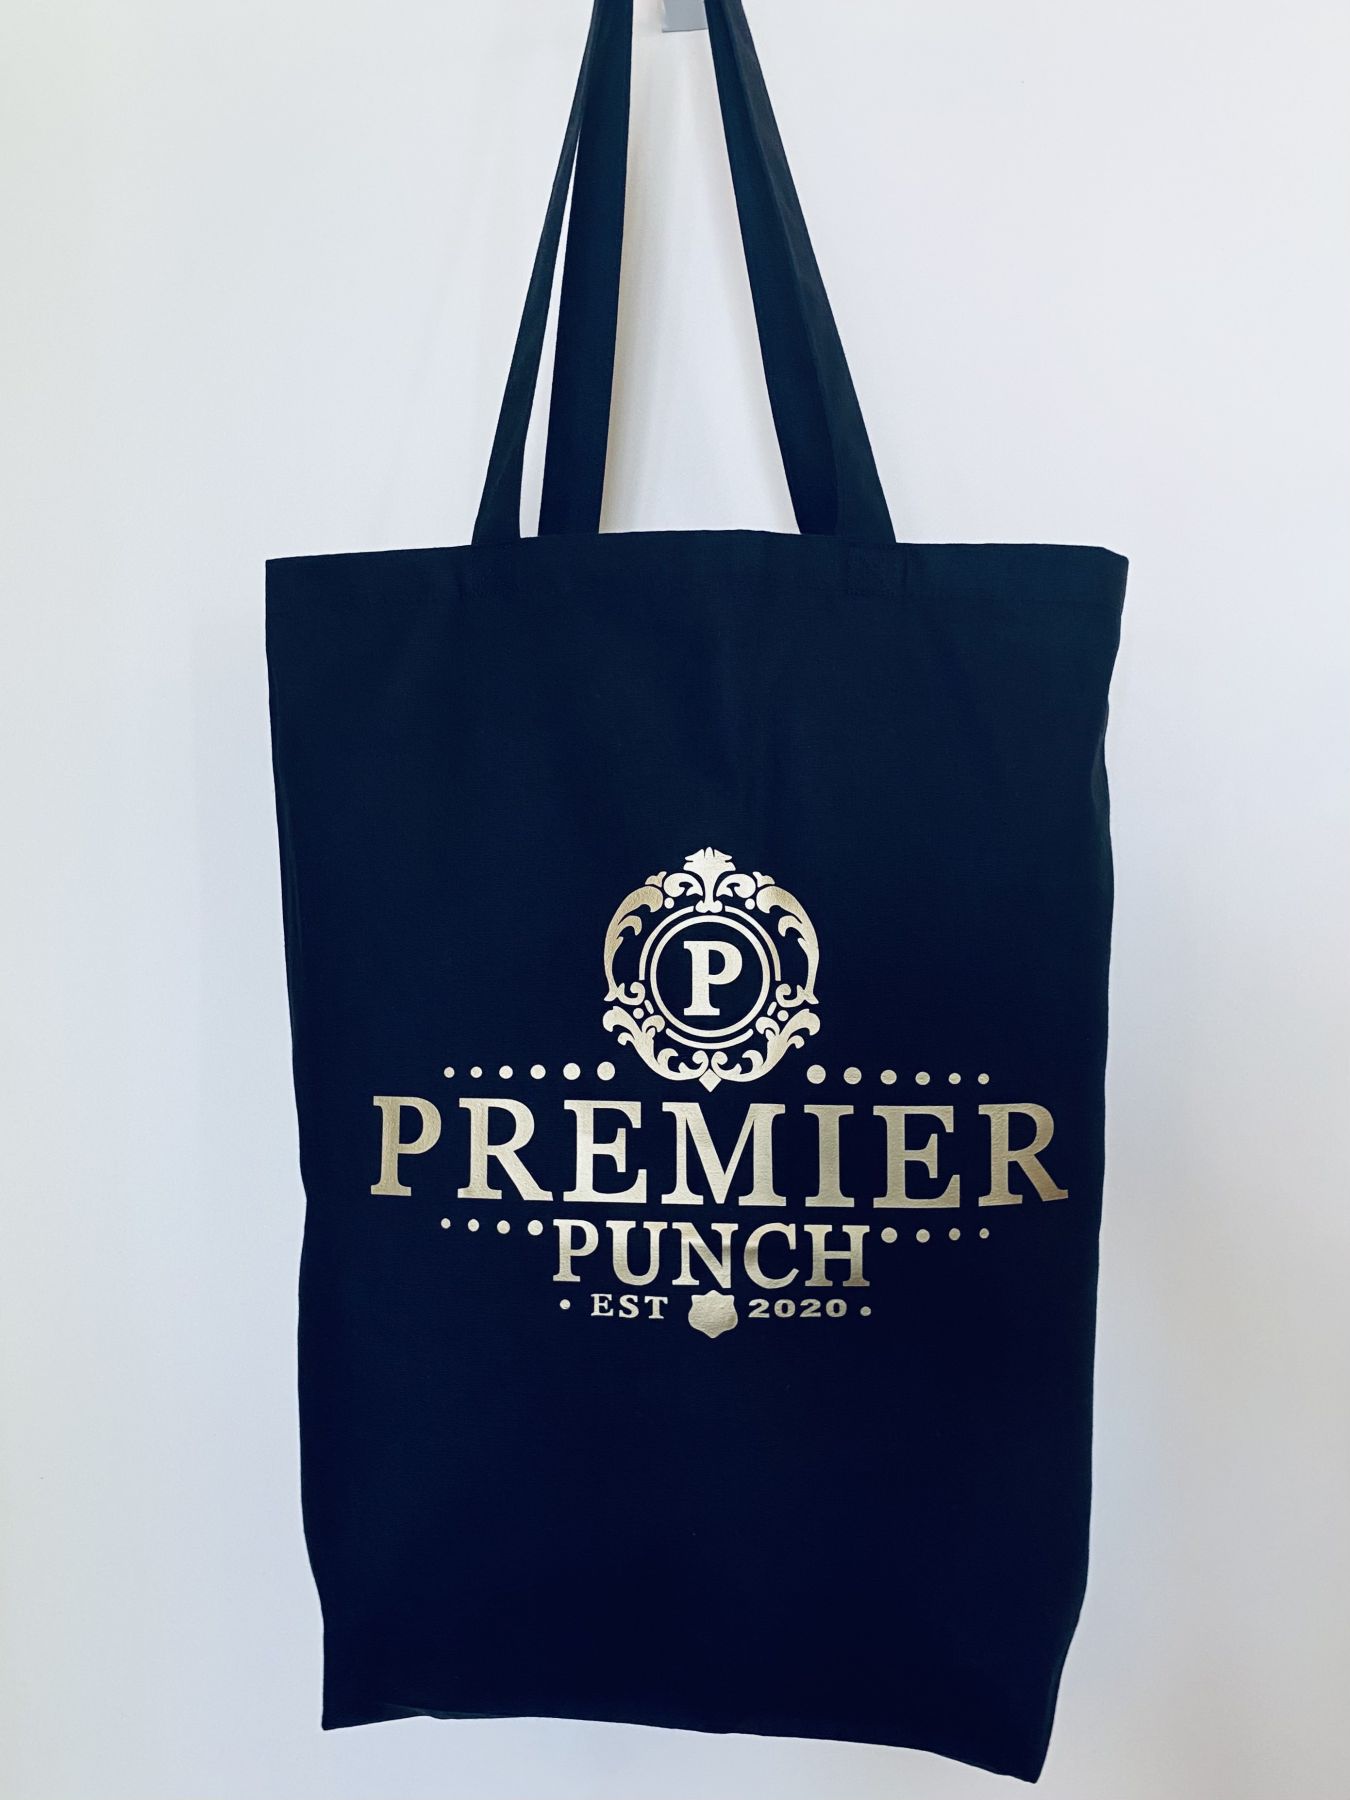 Premier Punch Branded Tote Bag